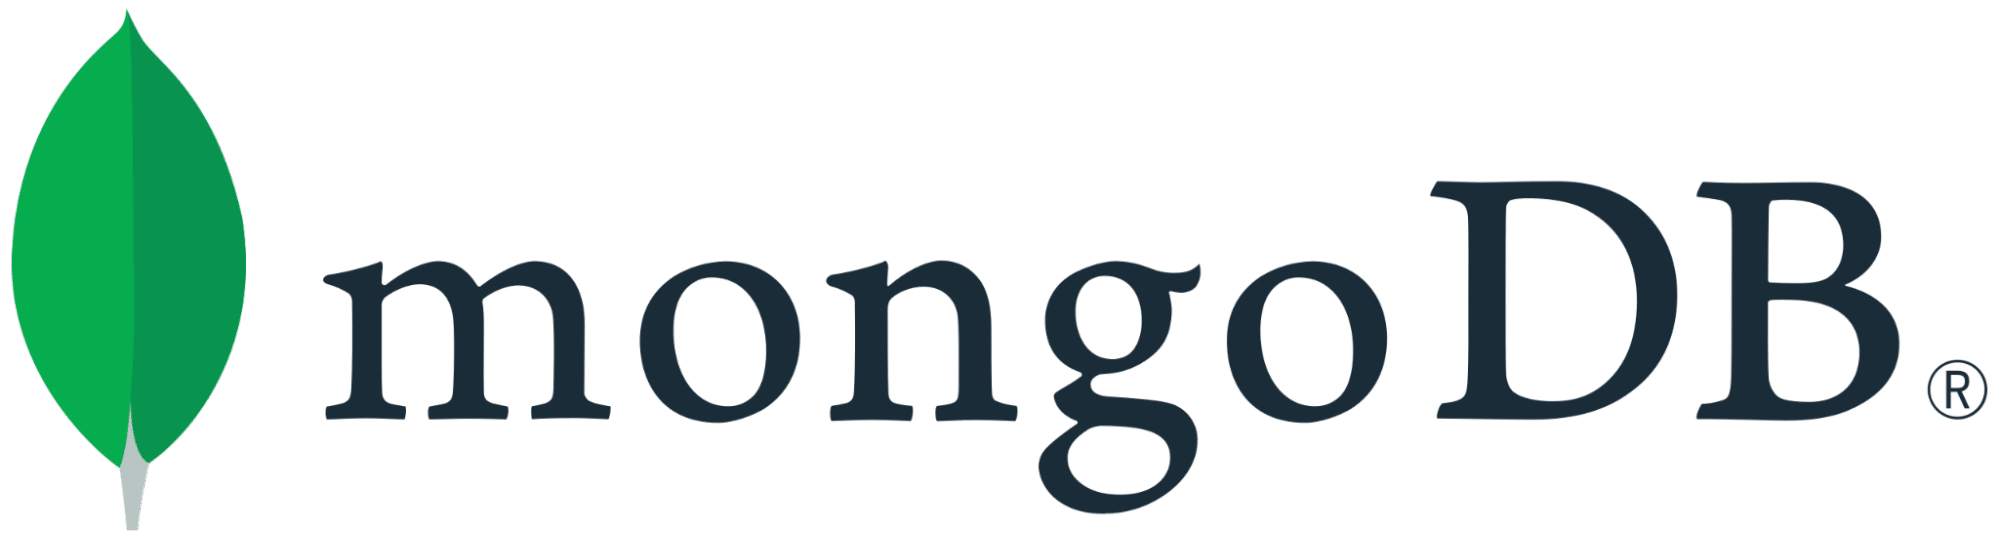 Il logo di MongoDB, con il testo accanto a una foglia verde in posizione verticale.